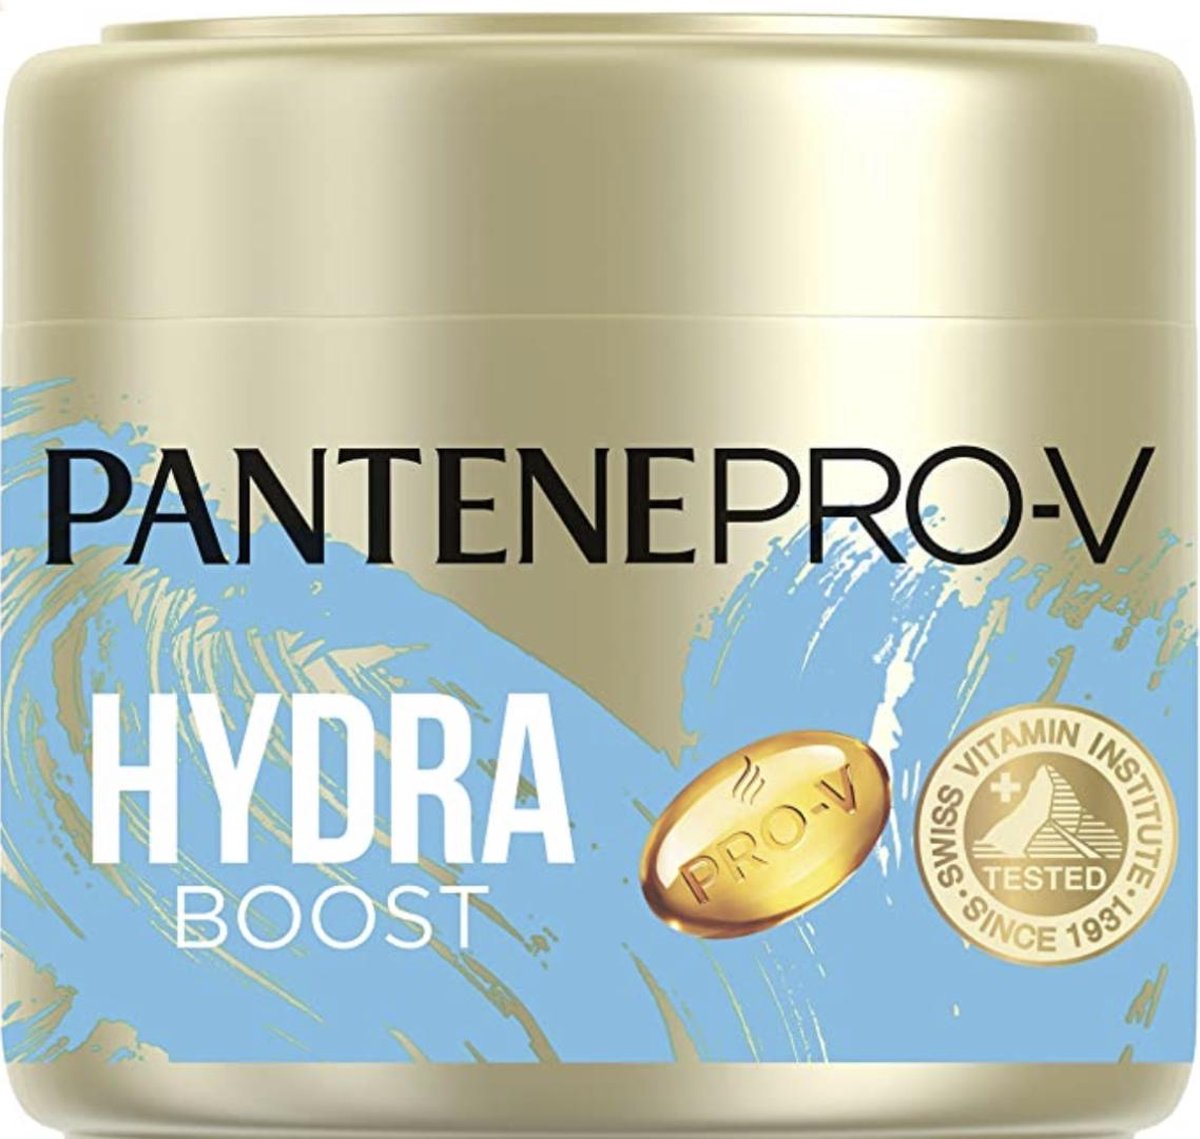 Pantene Pro-V Hydra Boost Keratn Reconstruct Haarmasker voor droog haar - 300 ml